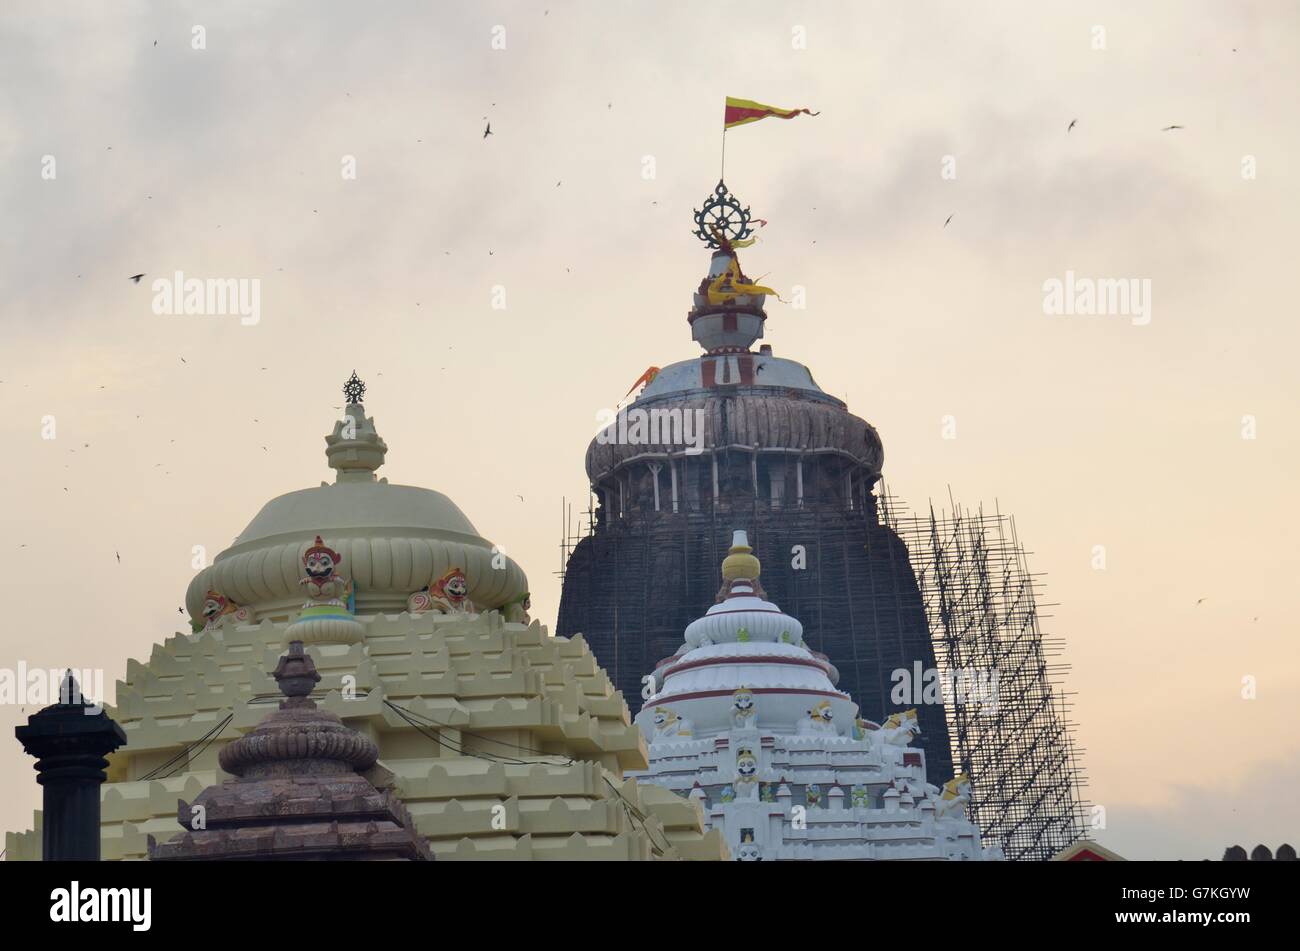 Lord Jagannatha Temple, Puri, Orissa, India Stock Photo